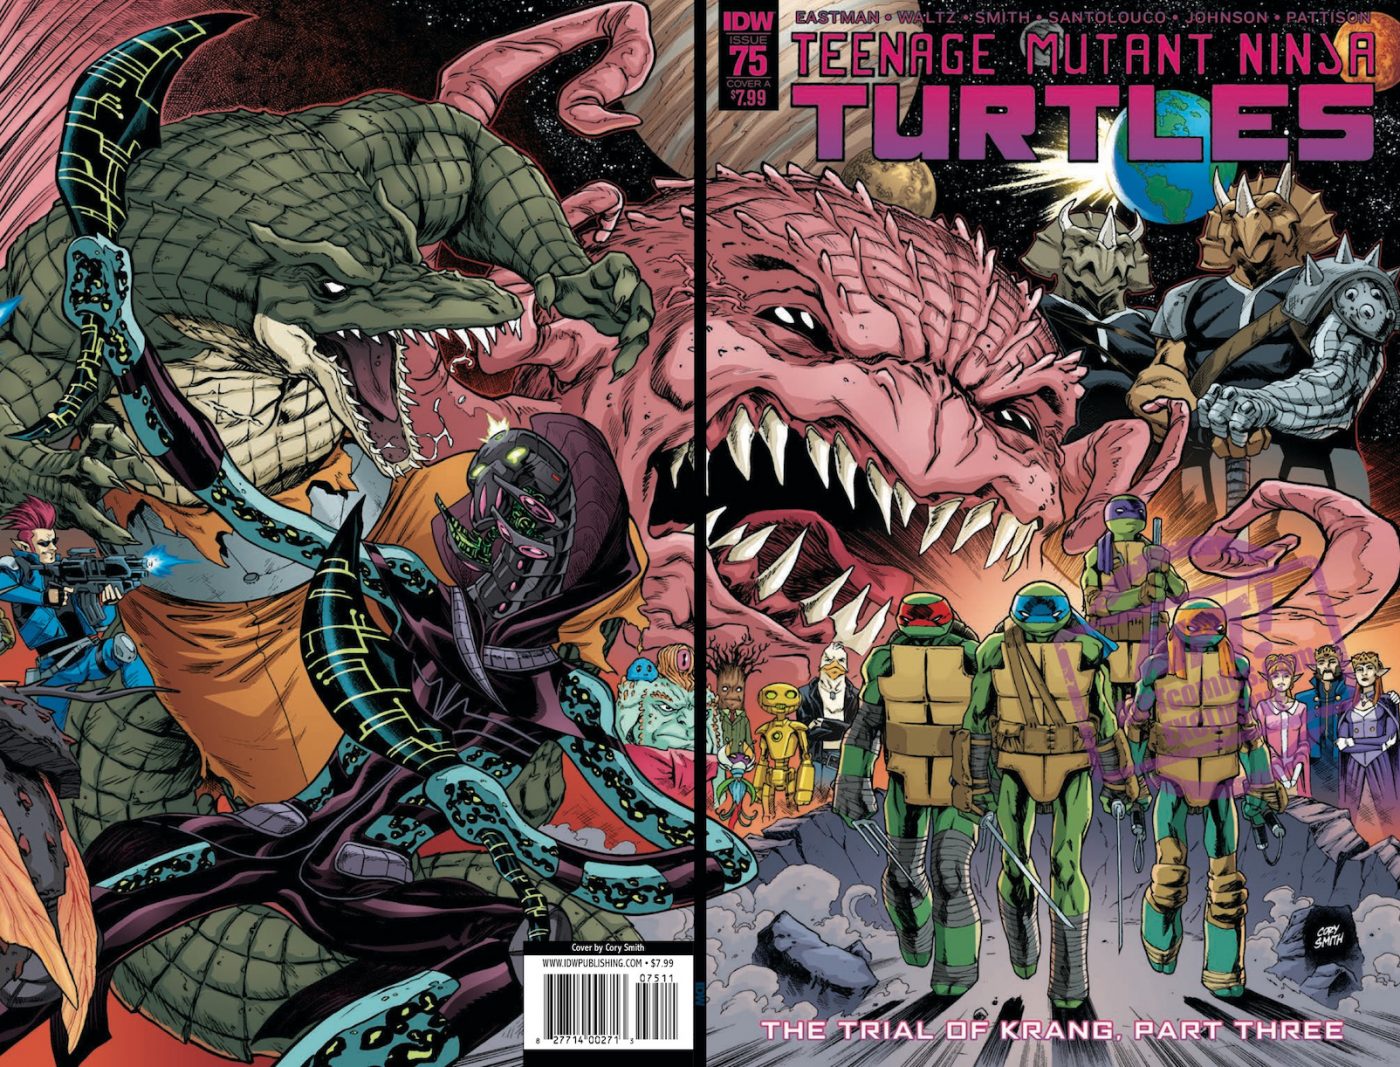 [EXCLUSIVE] IDW Preview: Teenage Mutant Ninja Turtles #75